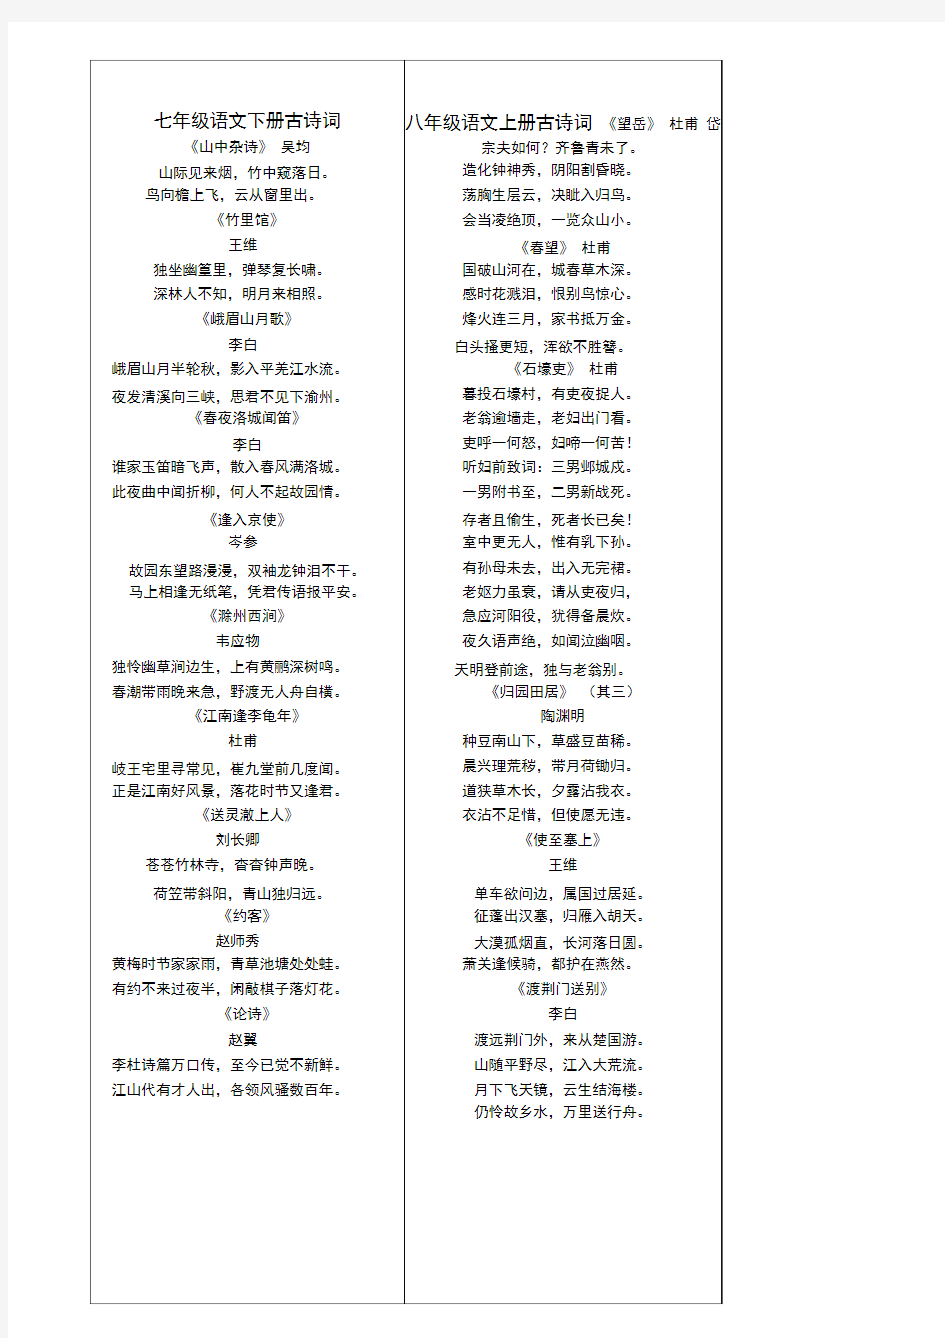 (完整版)人教版初中语文古诗词汇总